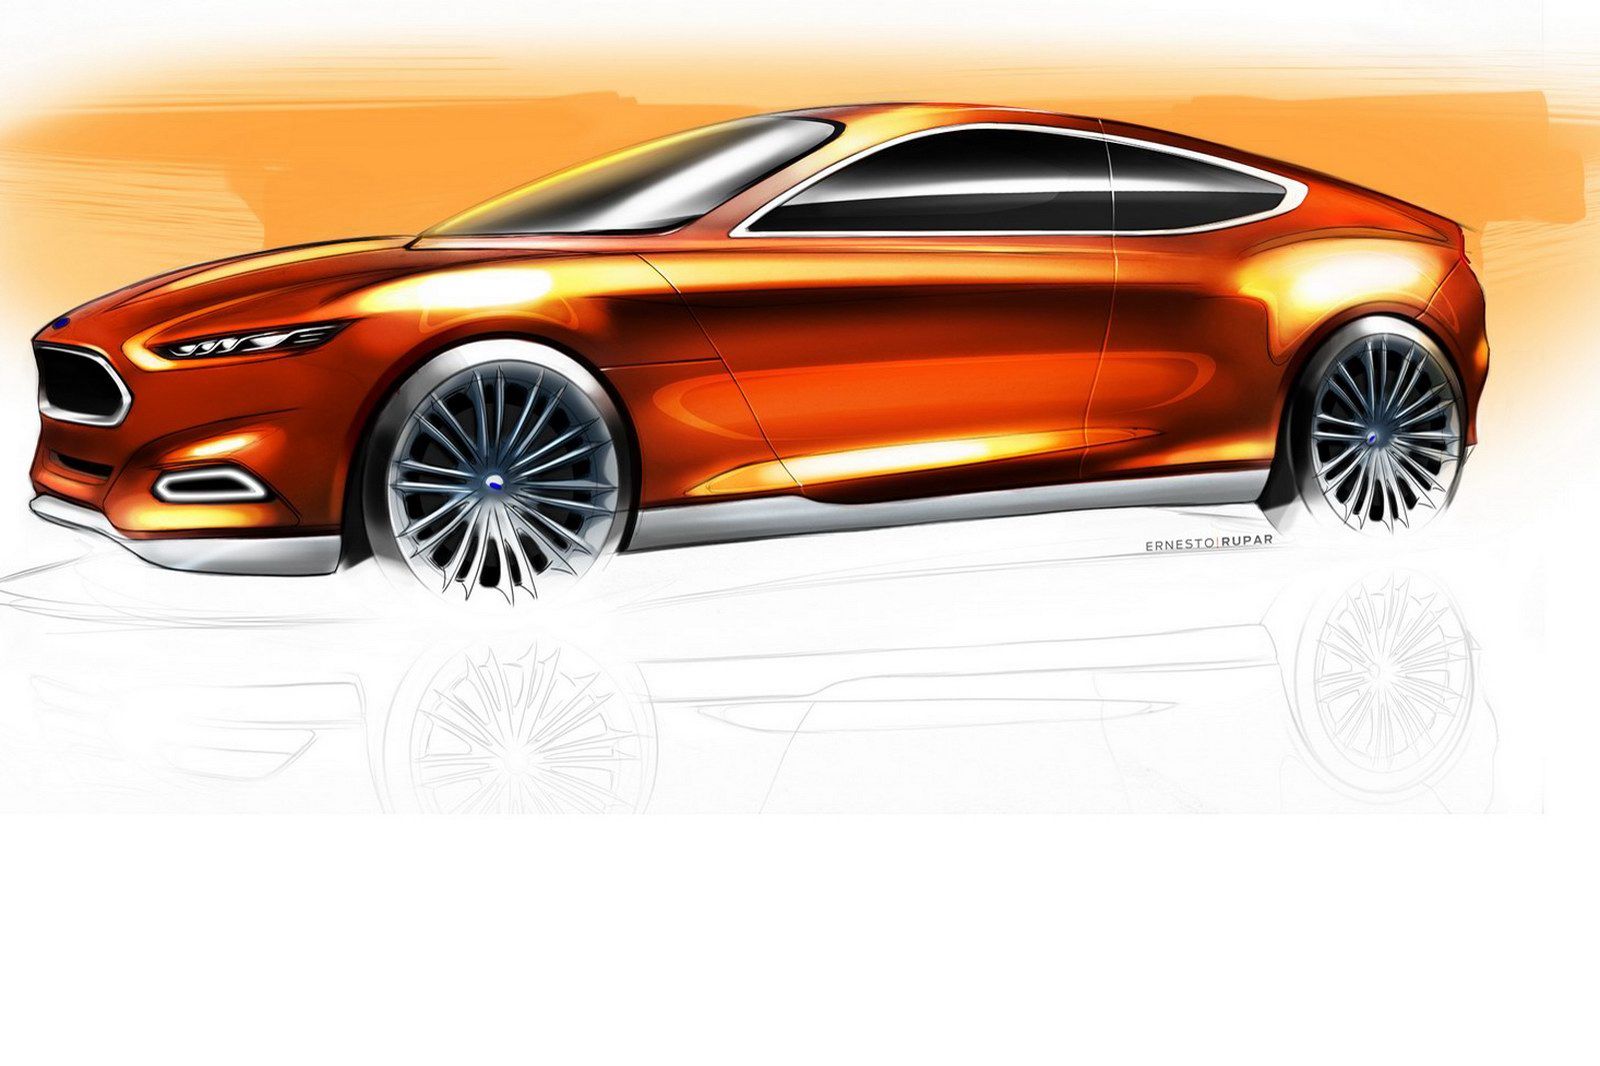 2011 Ford Evos Concept